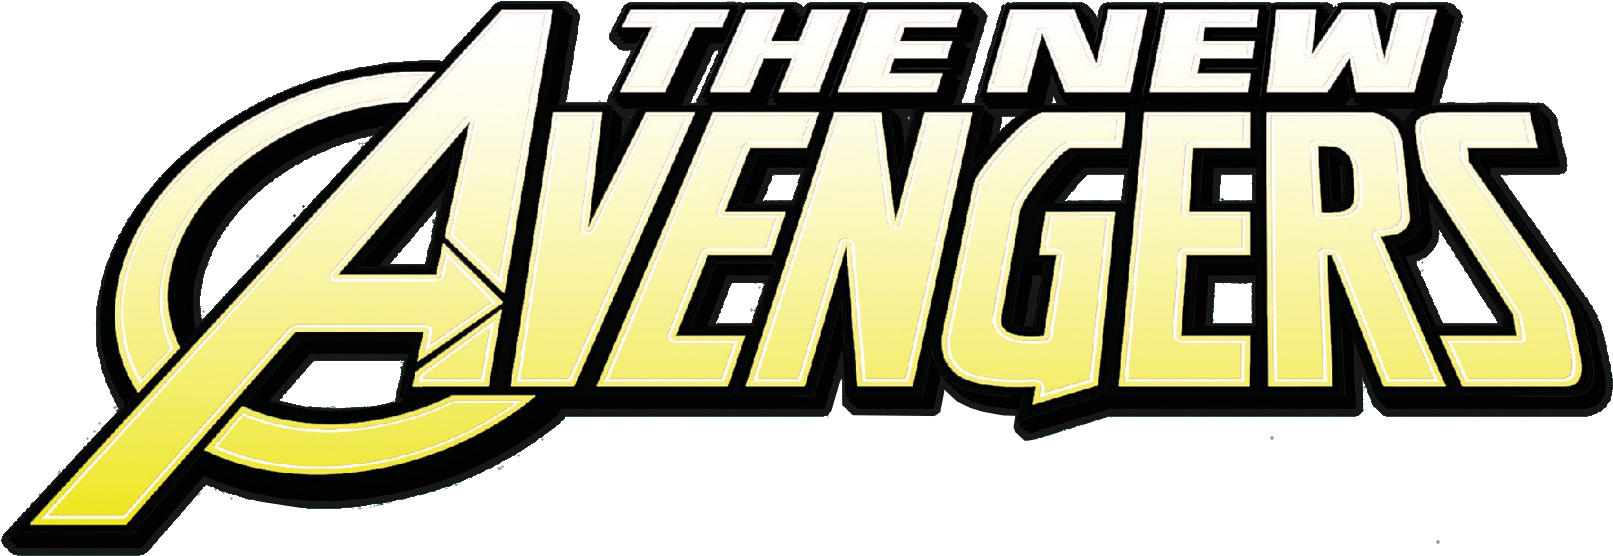 Captain America United States S.H.I.E.L.D. YouTube, shield, marvel Avengers  Assemble, logo png | PNGEgg